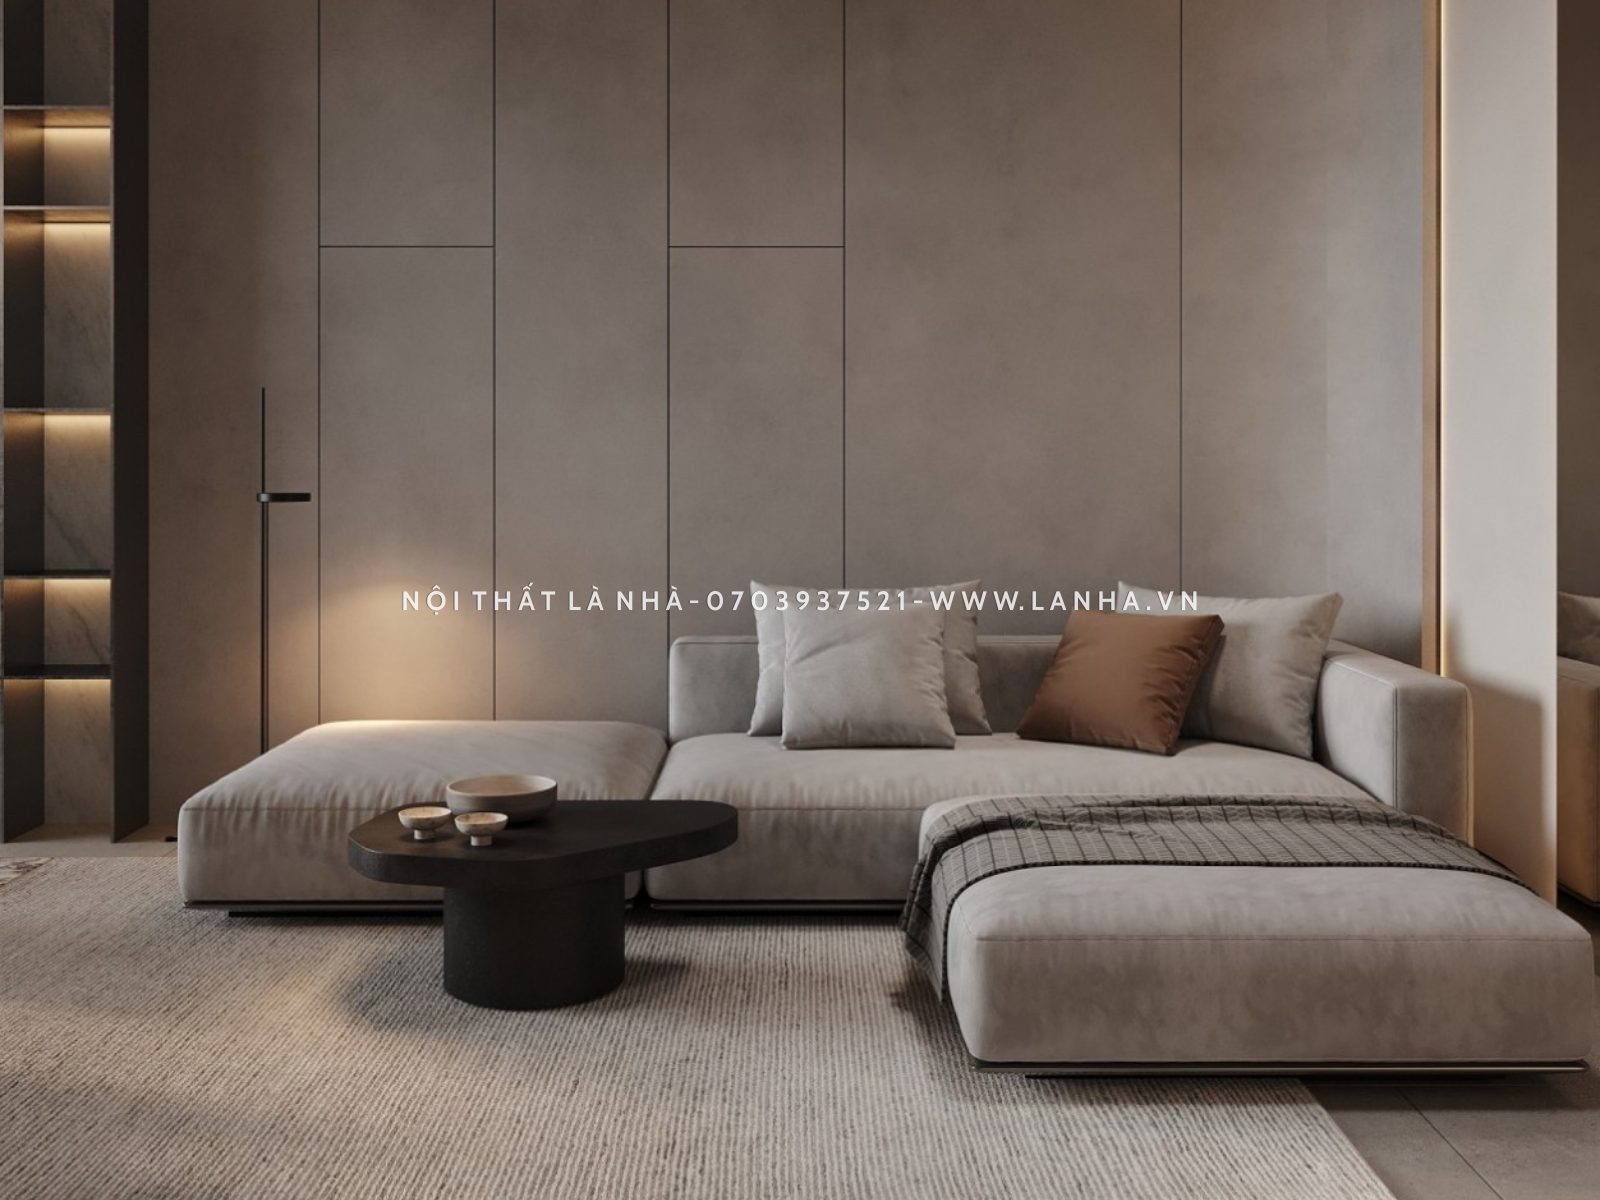 Bạn có thể dùng ghế sofa, thảm trải sàn để tạo điểm nhấn cho căn hộ